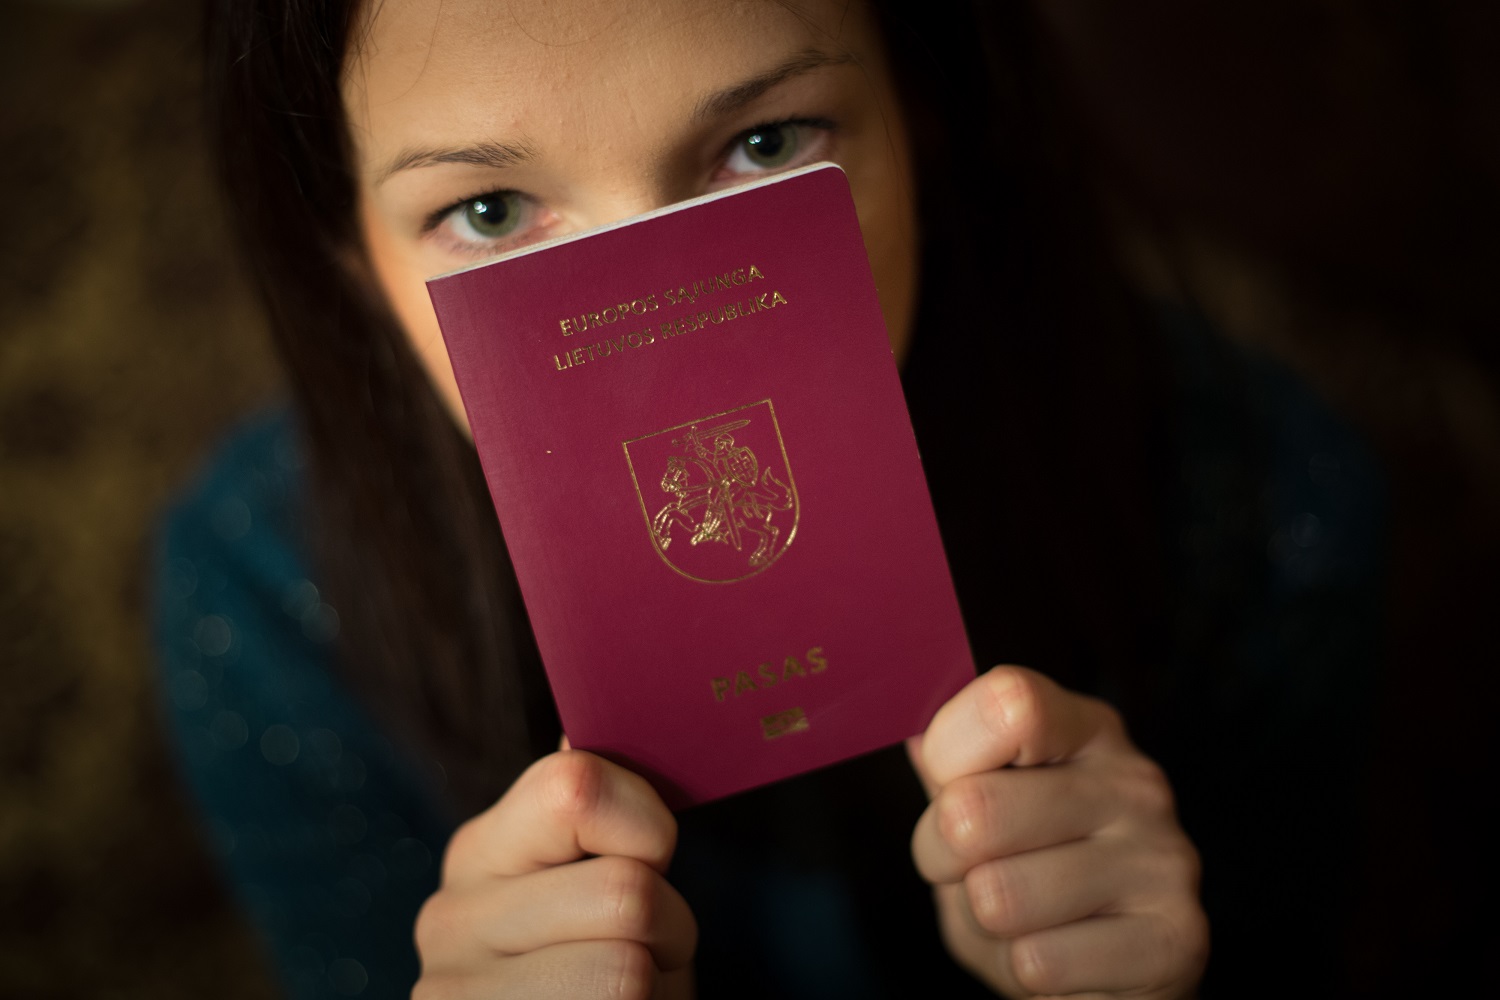 Galingiausių pasaulio pasų reitinge Lietuva – 9-oje vietoje